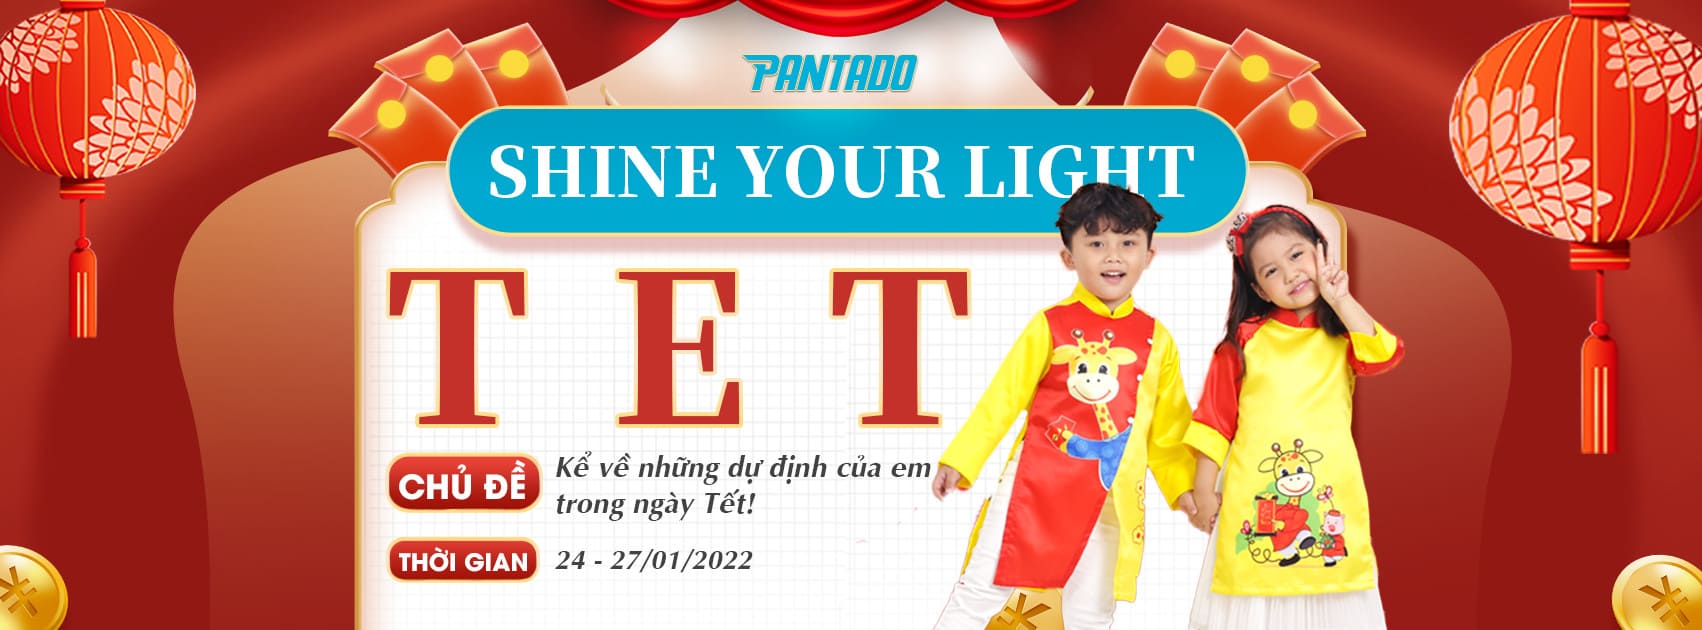  Shine your light pantado